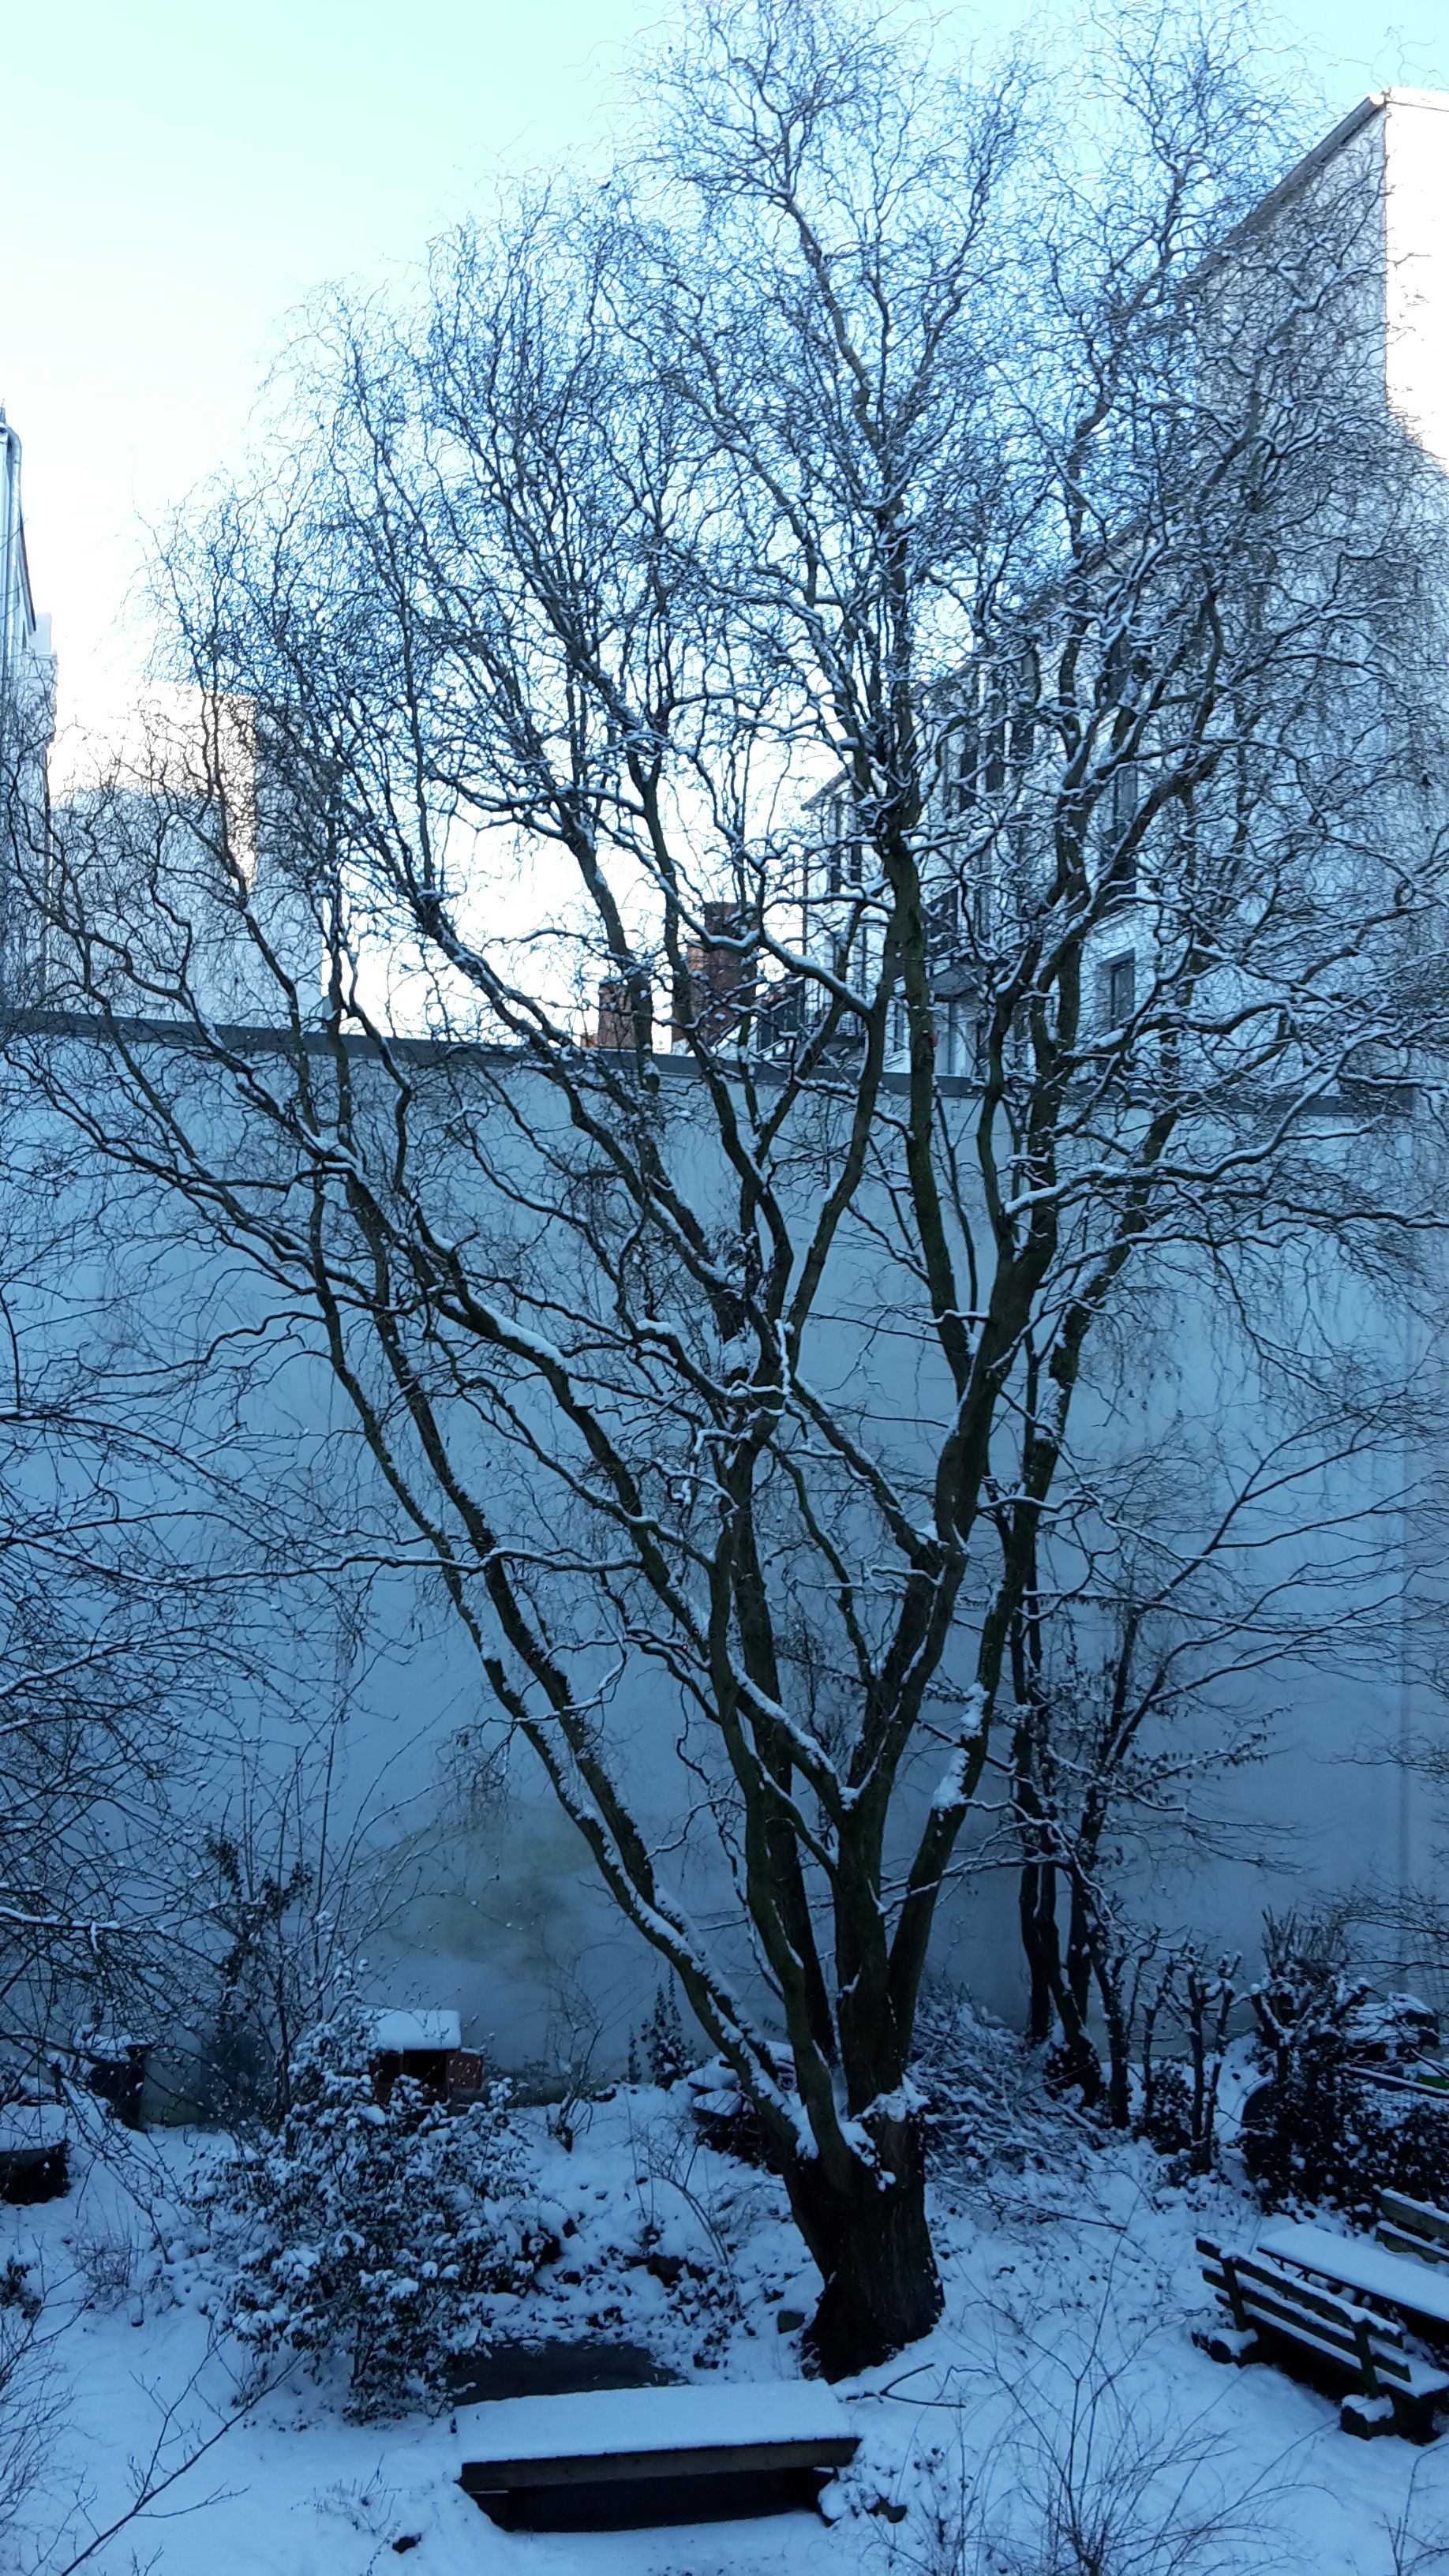 Schnee auf Baum - Garten.jpg